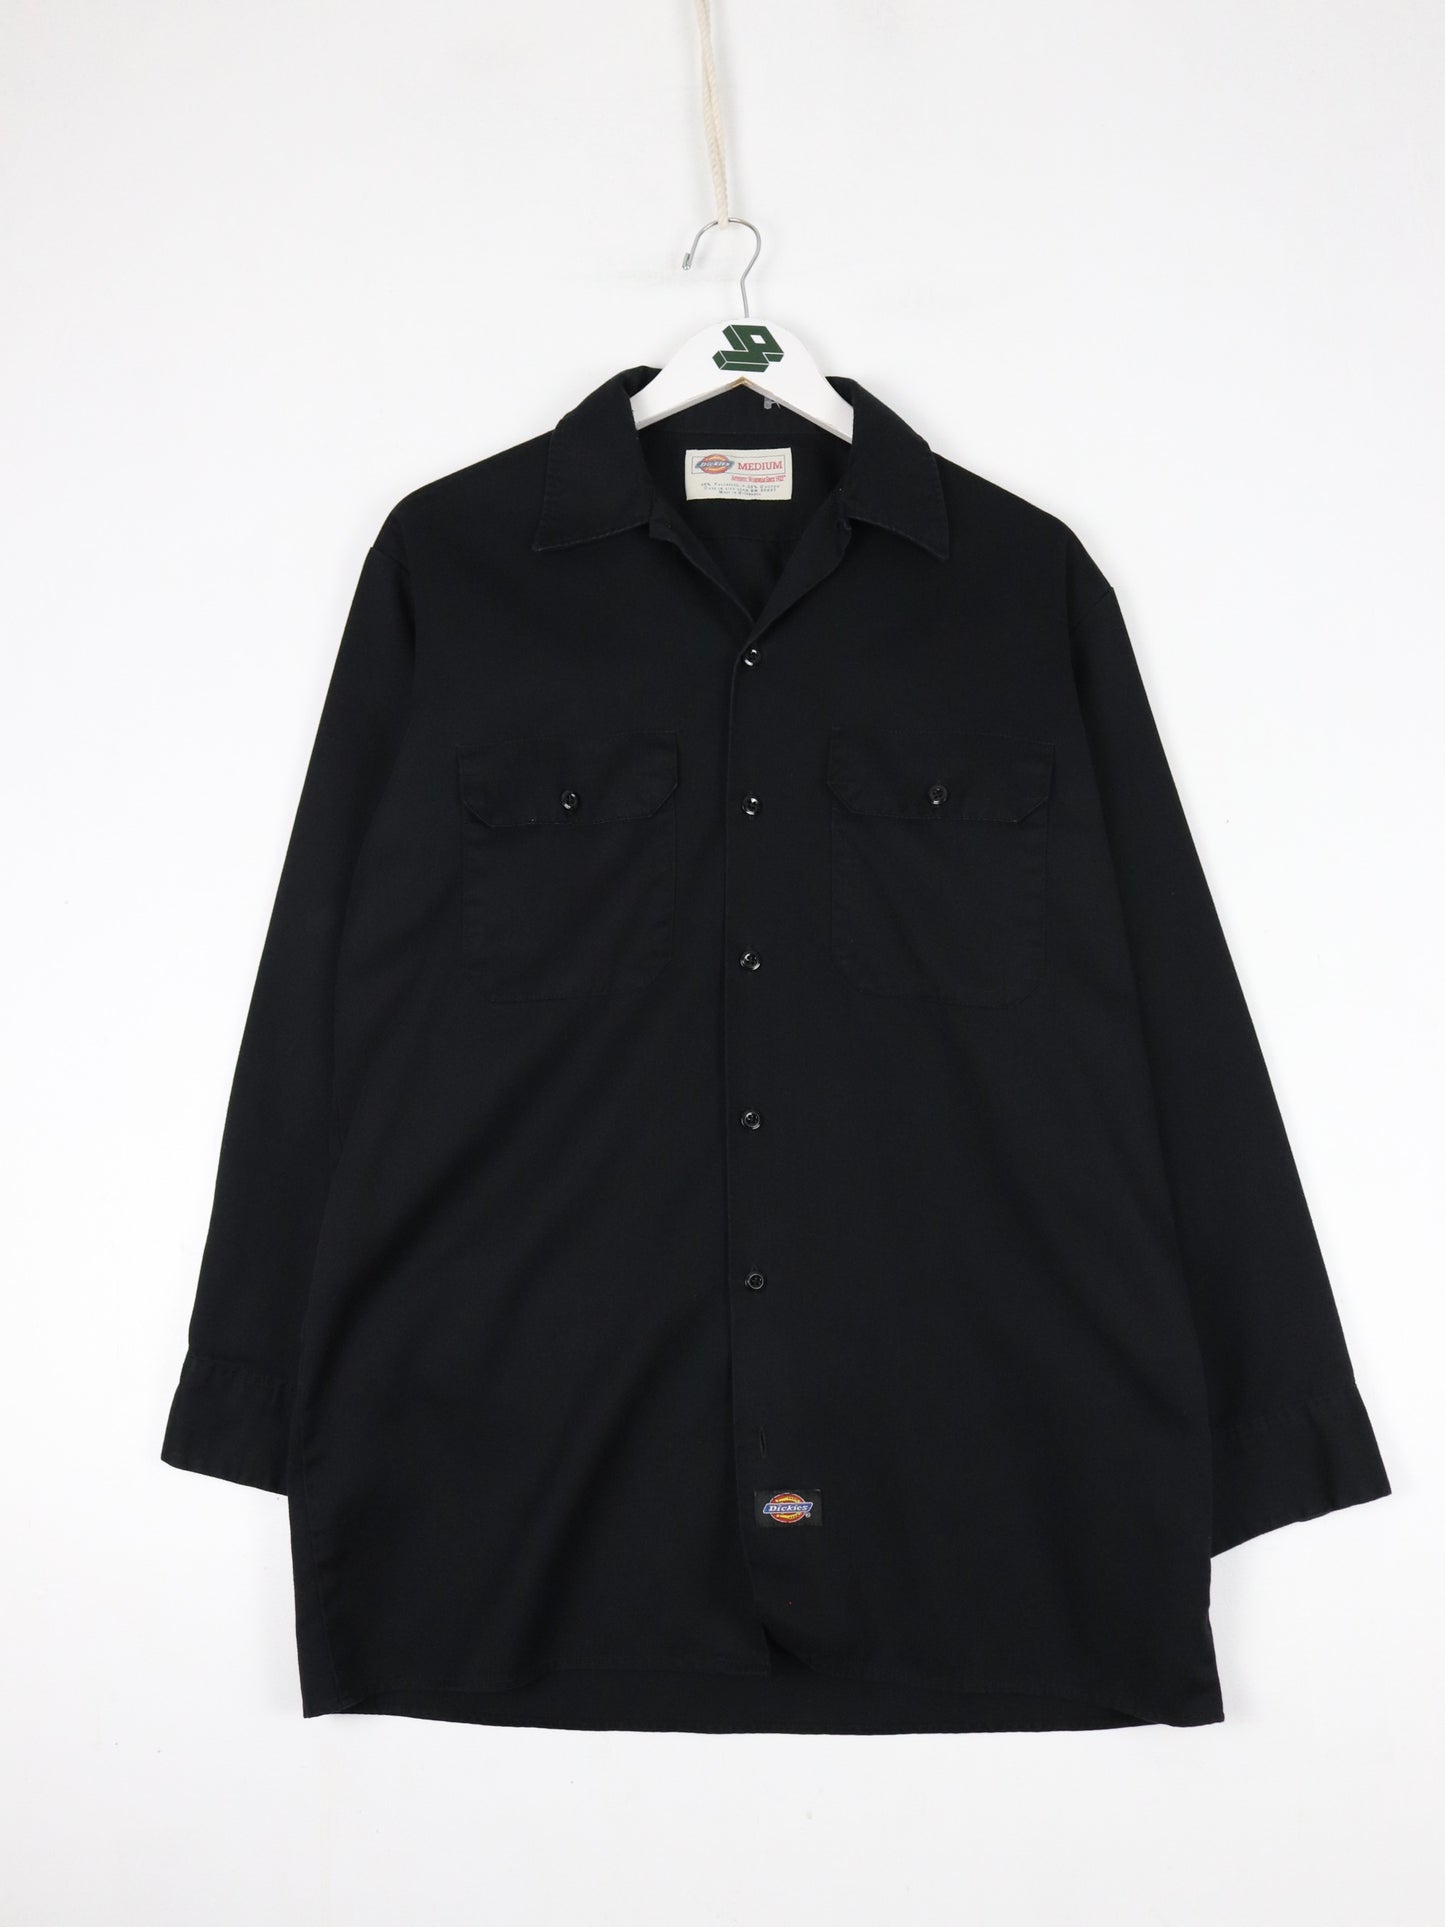 Dickies Shirt Mens Medium Black Button Up Work Wear